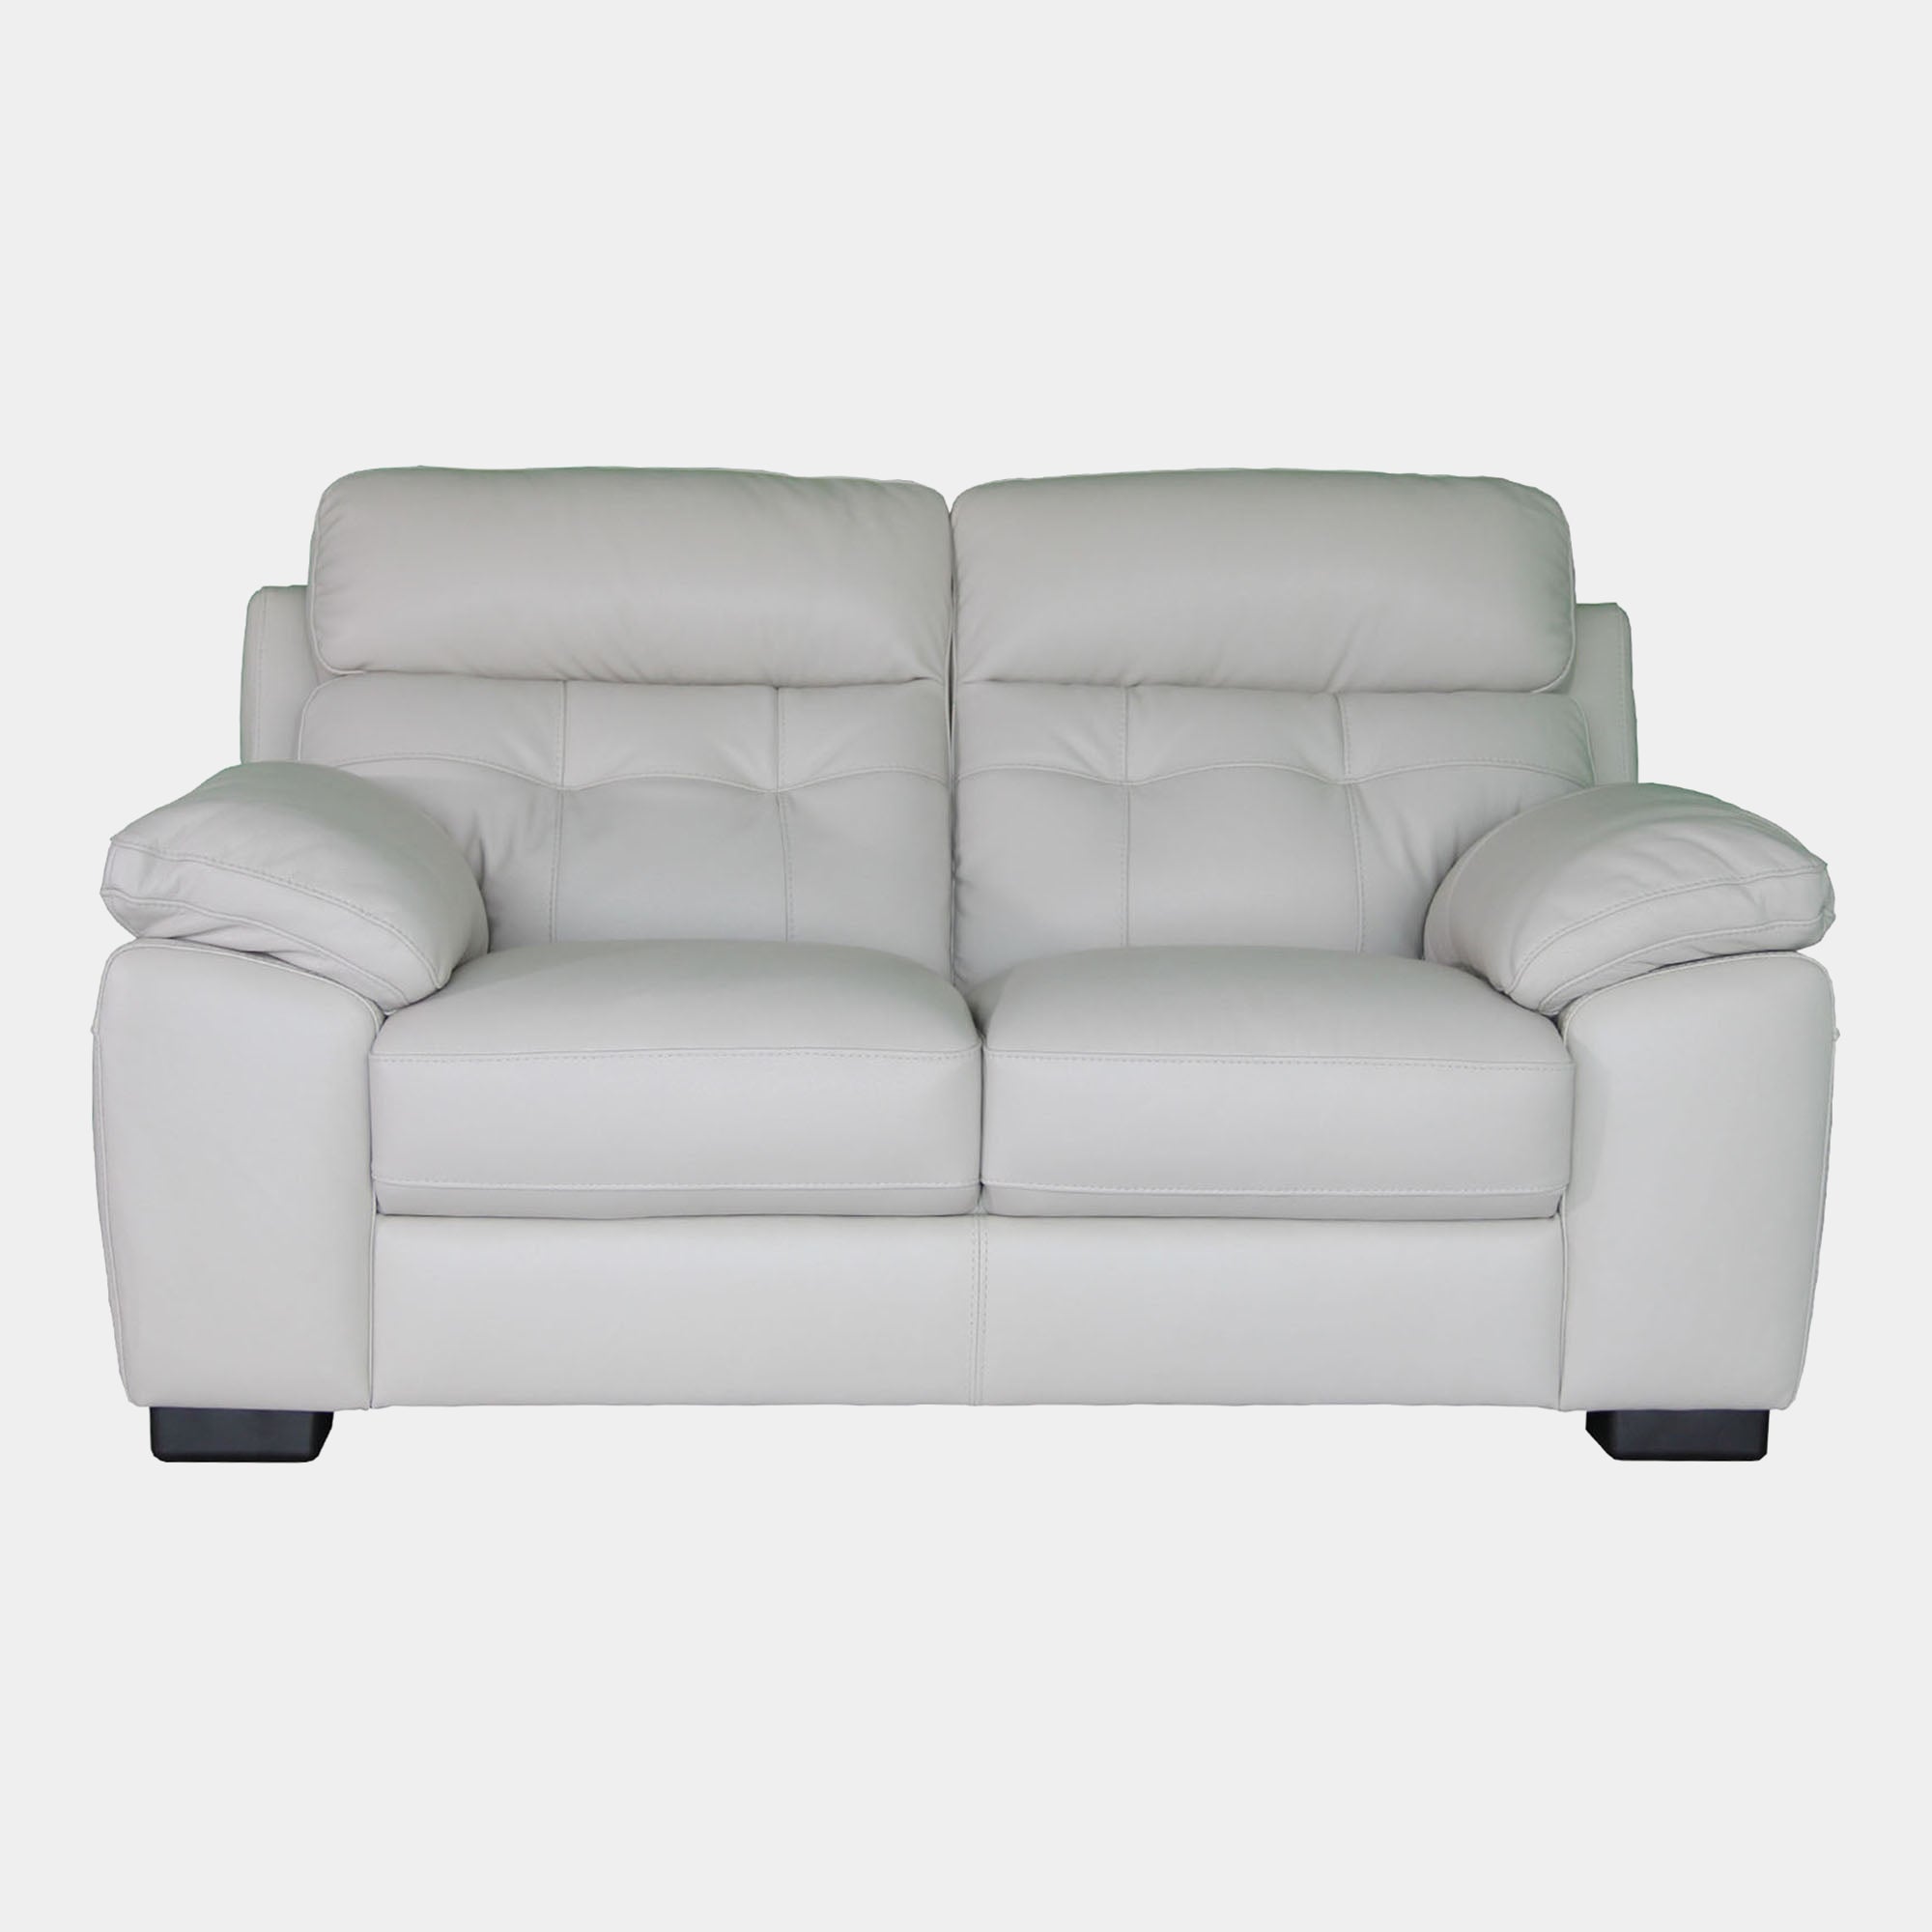 Trapani - 2 Seat Sofa